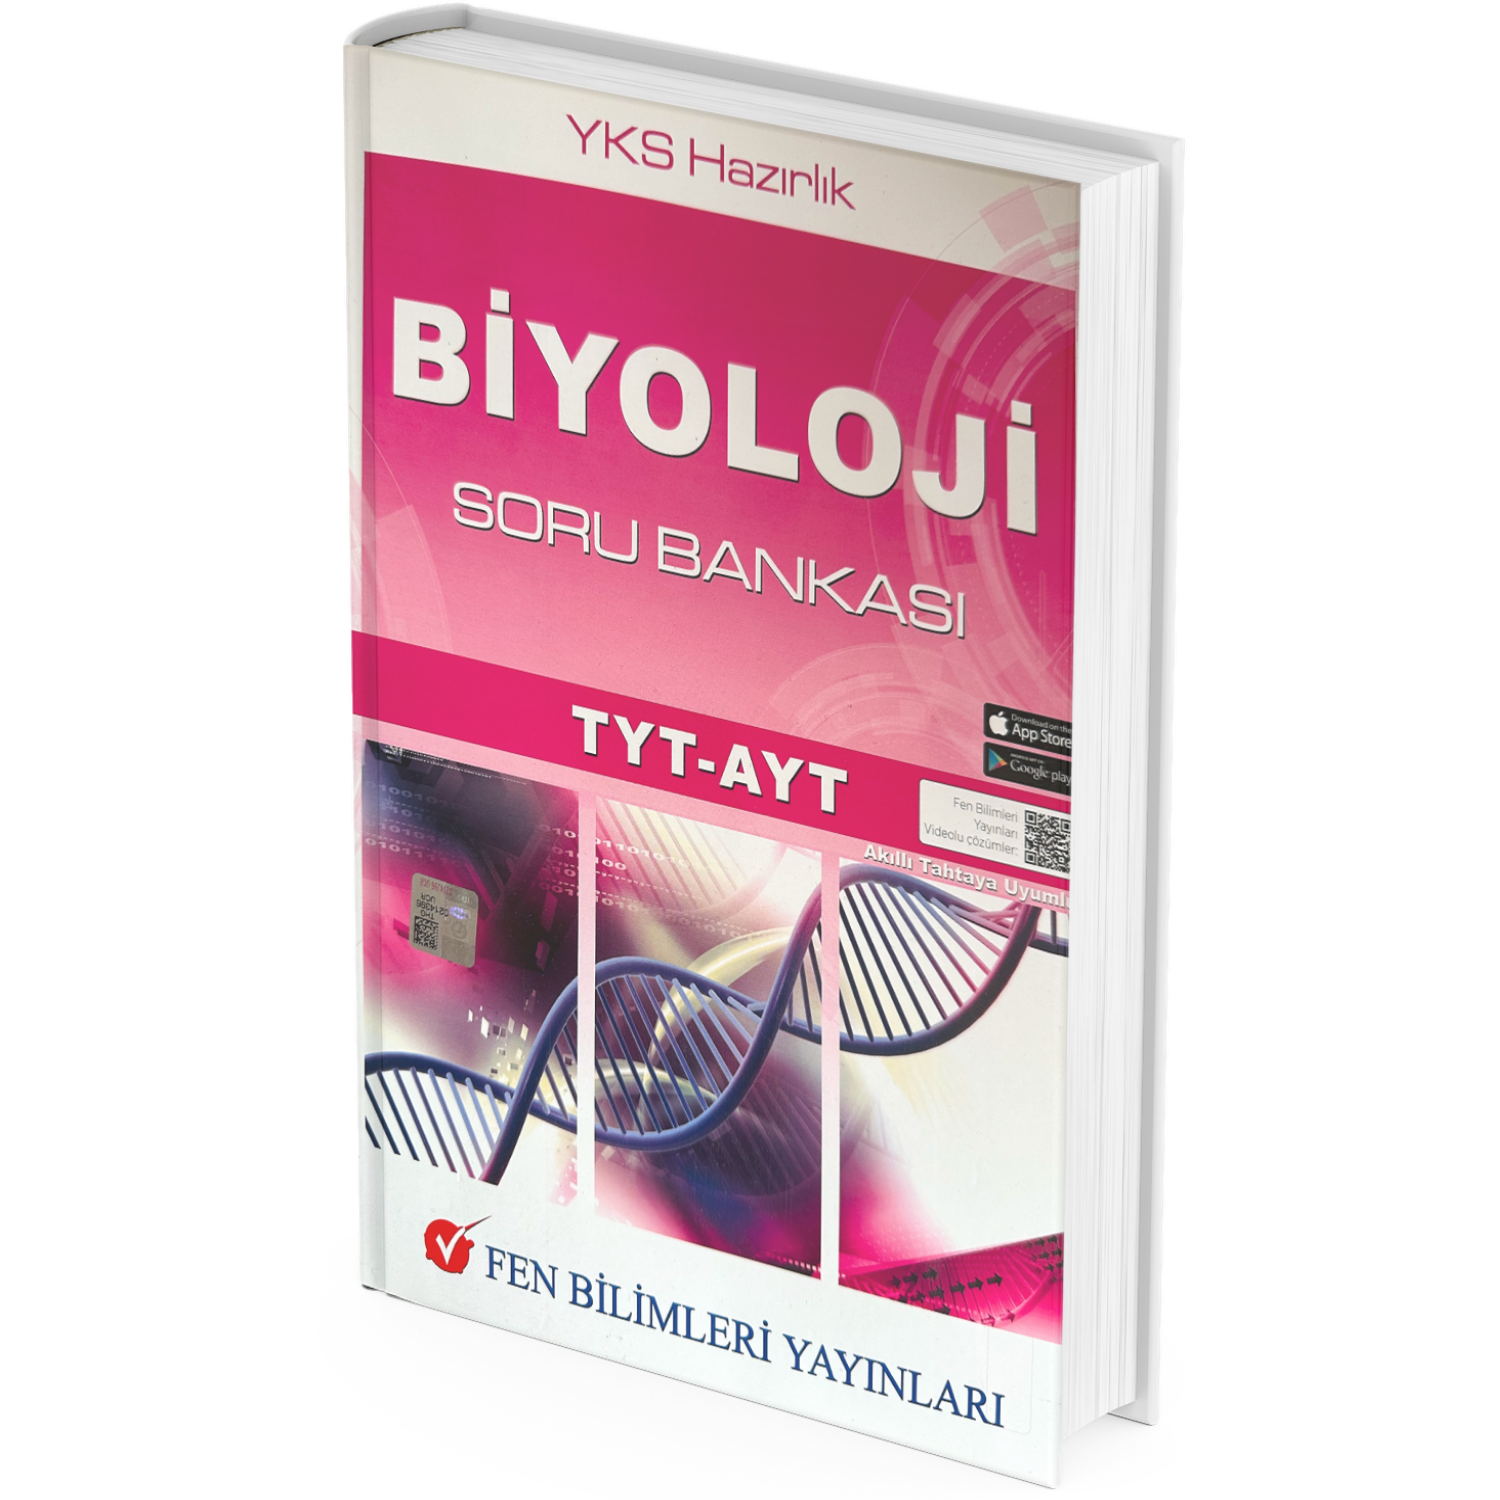 Fen Bilimleri Yayınları Venüs Serisi Tyt-Ayt Biyoloji Soru Bankası